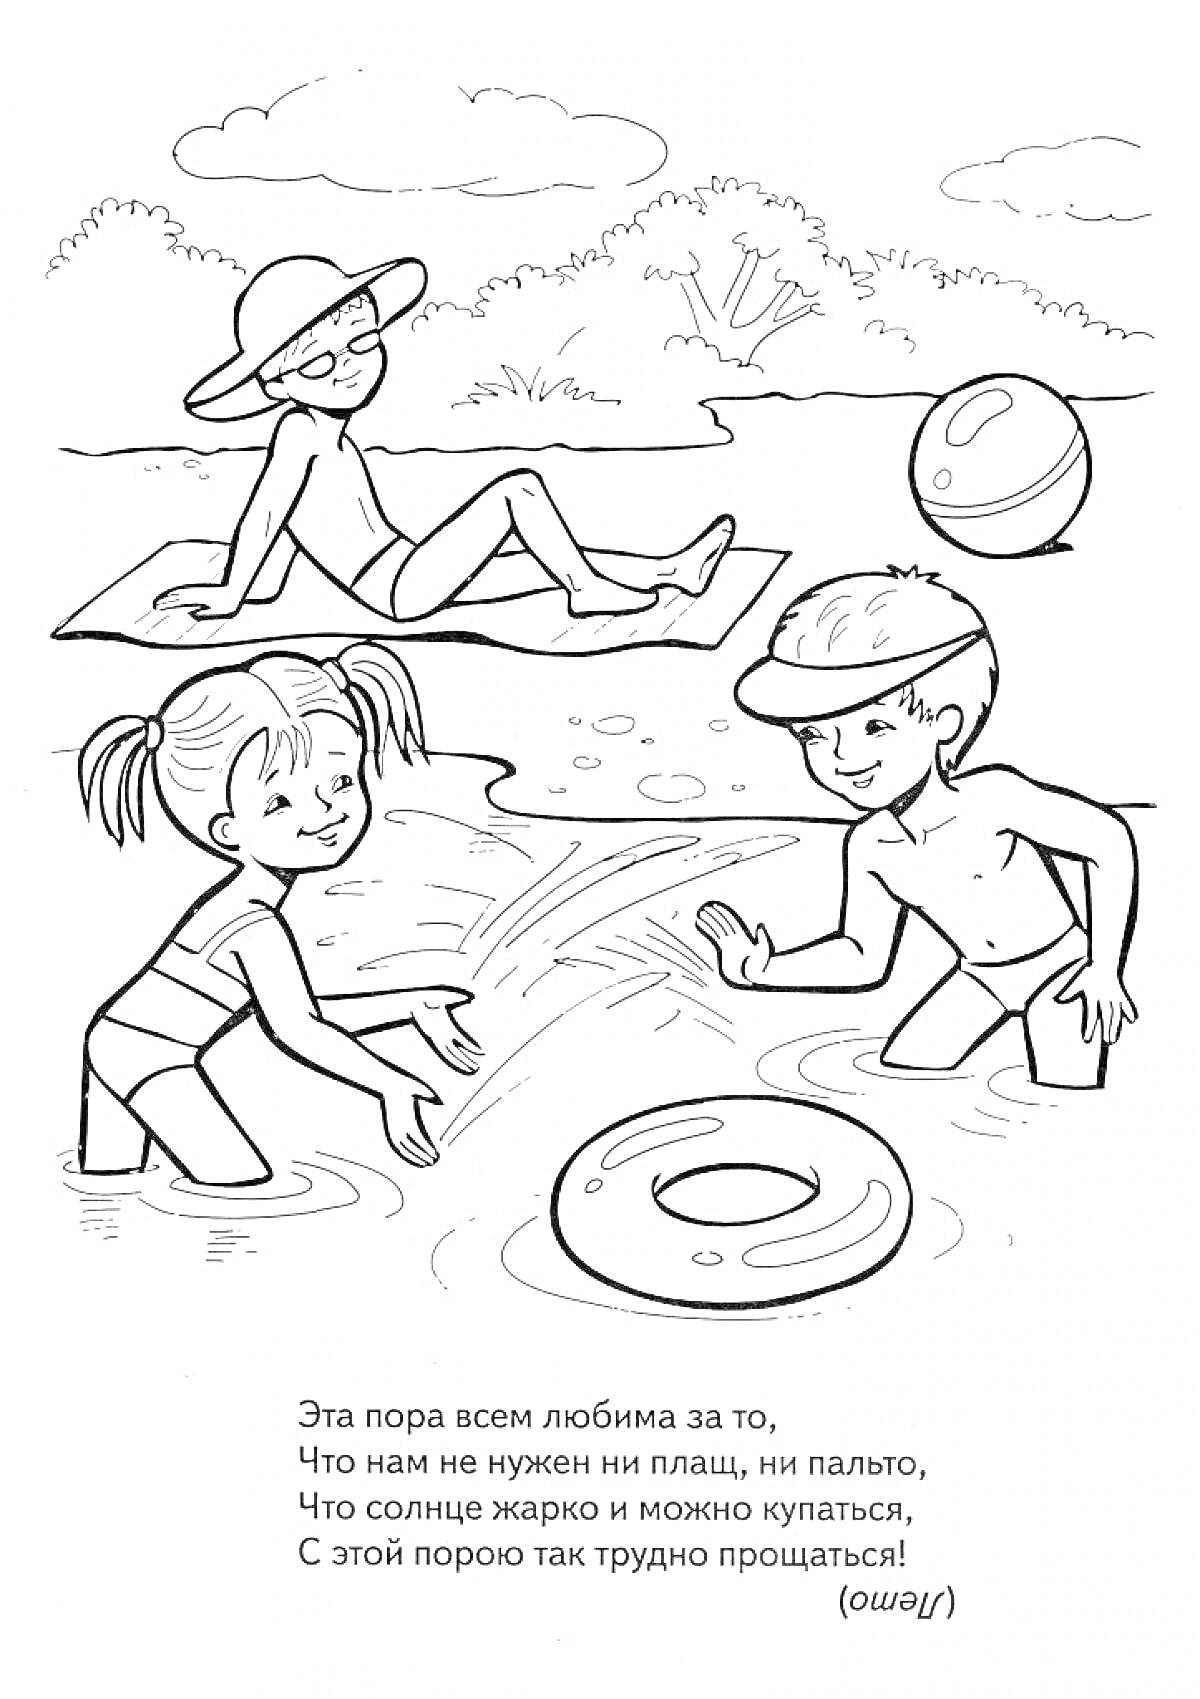 Дети играют на пляже: девочка и мальчик в купальниках играют в воде с надувным кругом, женщина в шляпе лежит на песке, пляжный мяч рядом